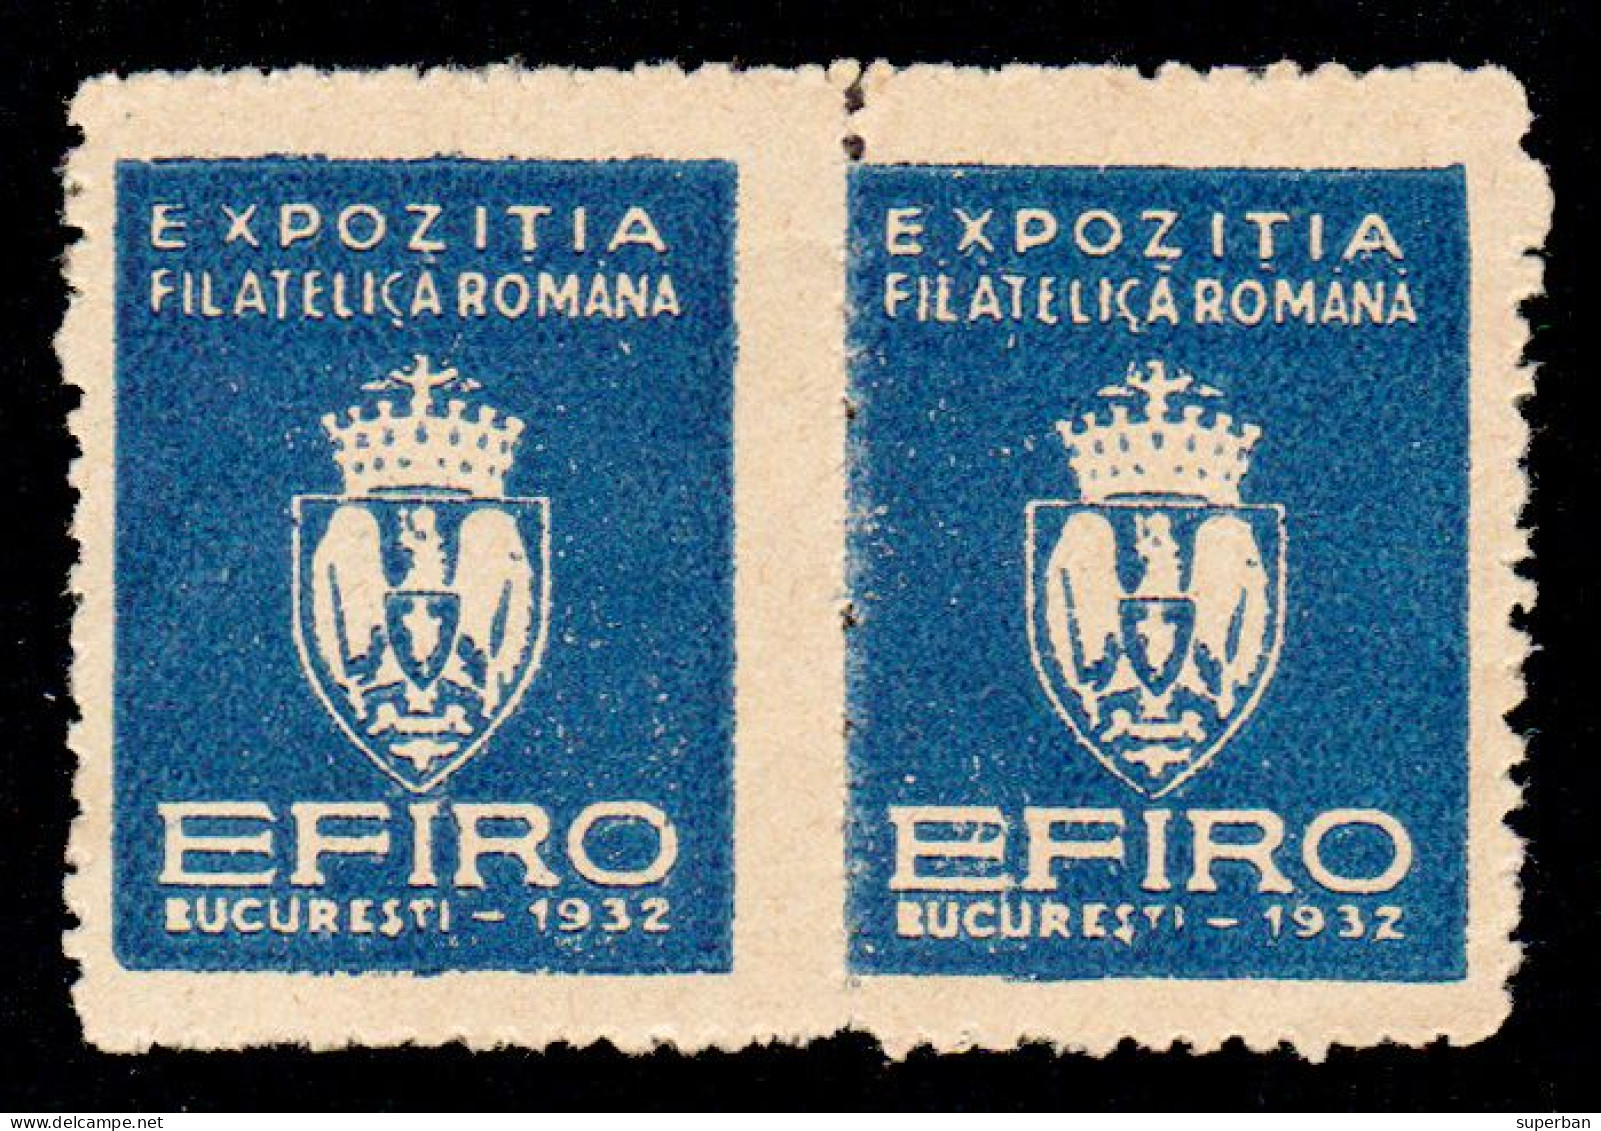 ROUMANIE / ROMANIA - VIGNETTE / CINDERELLA - 2 X EFIRO 1932 - EXPOZITIA FILATELICA ROMÂNA [ MNH ] - RRR ! (am819) - Steuermarken